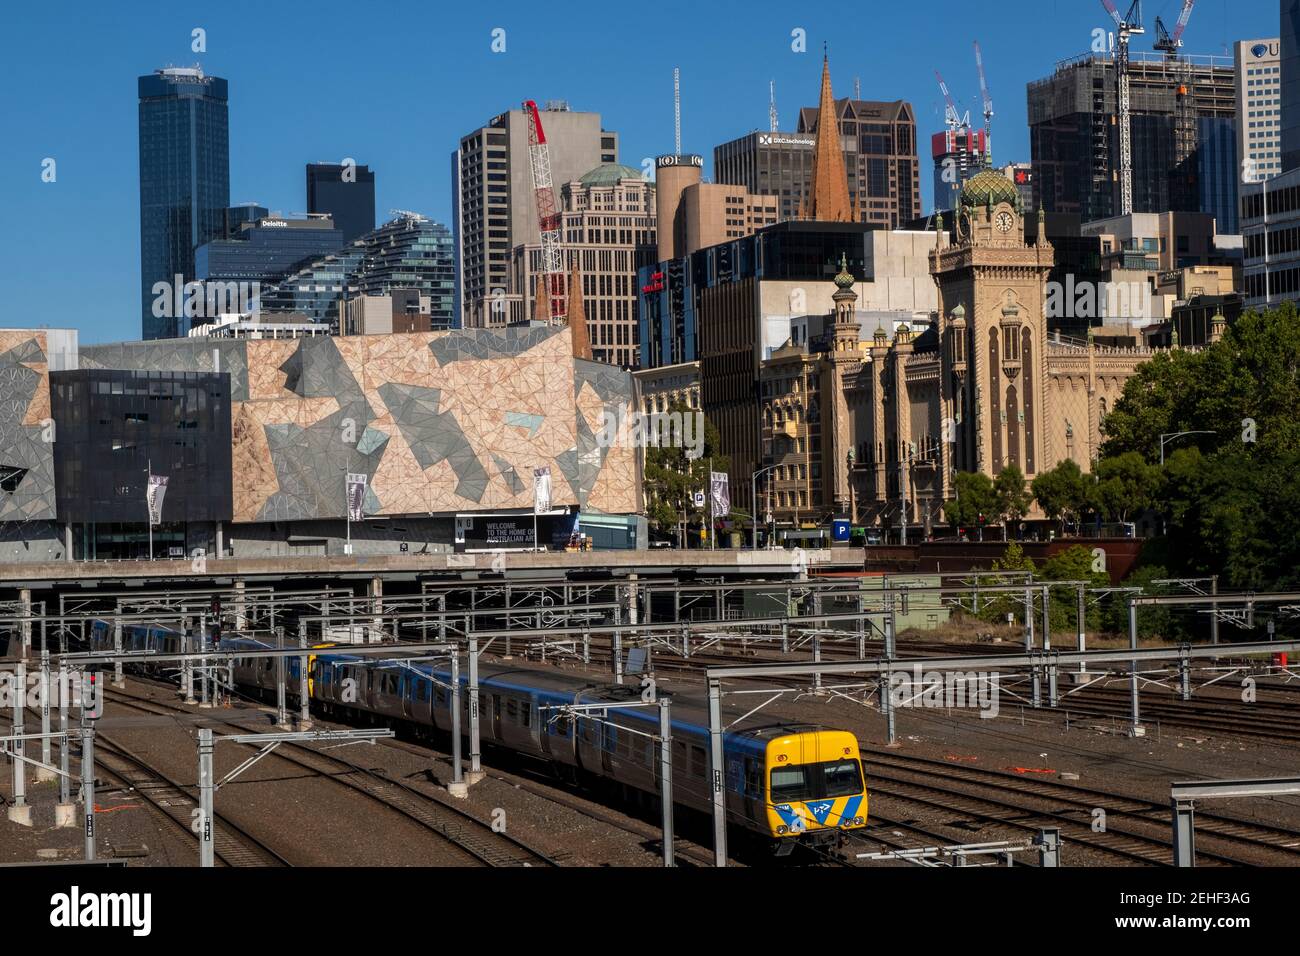 Binari ferroviari di fronte allo skyline della citta' di Melbourne, Victoria, Australia. Foto Stock